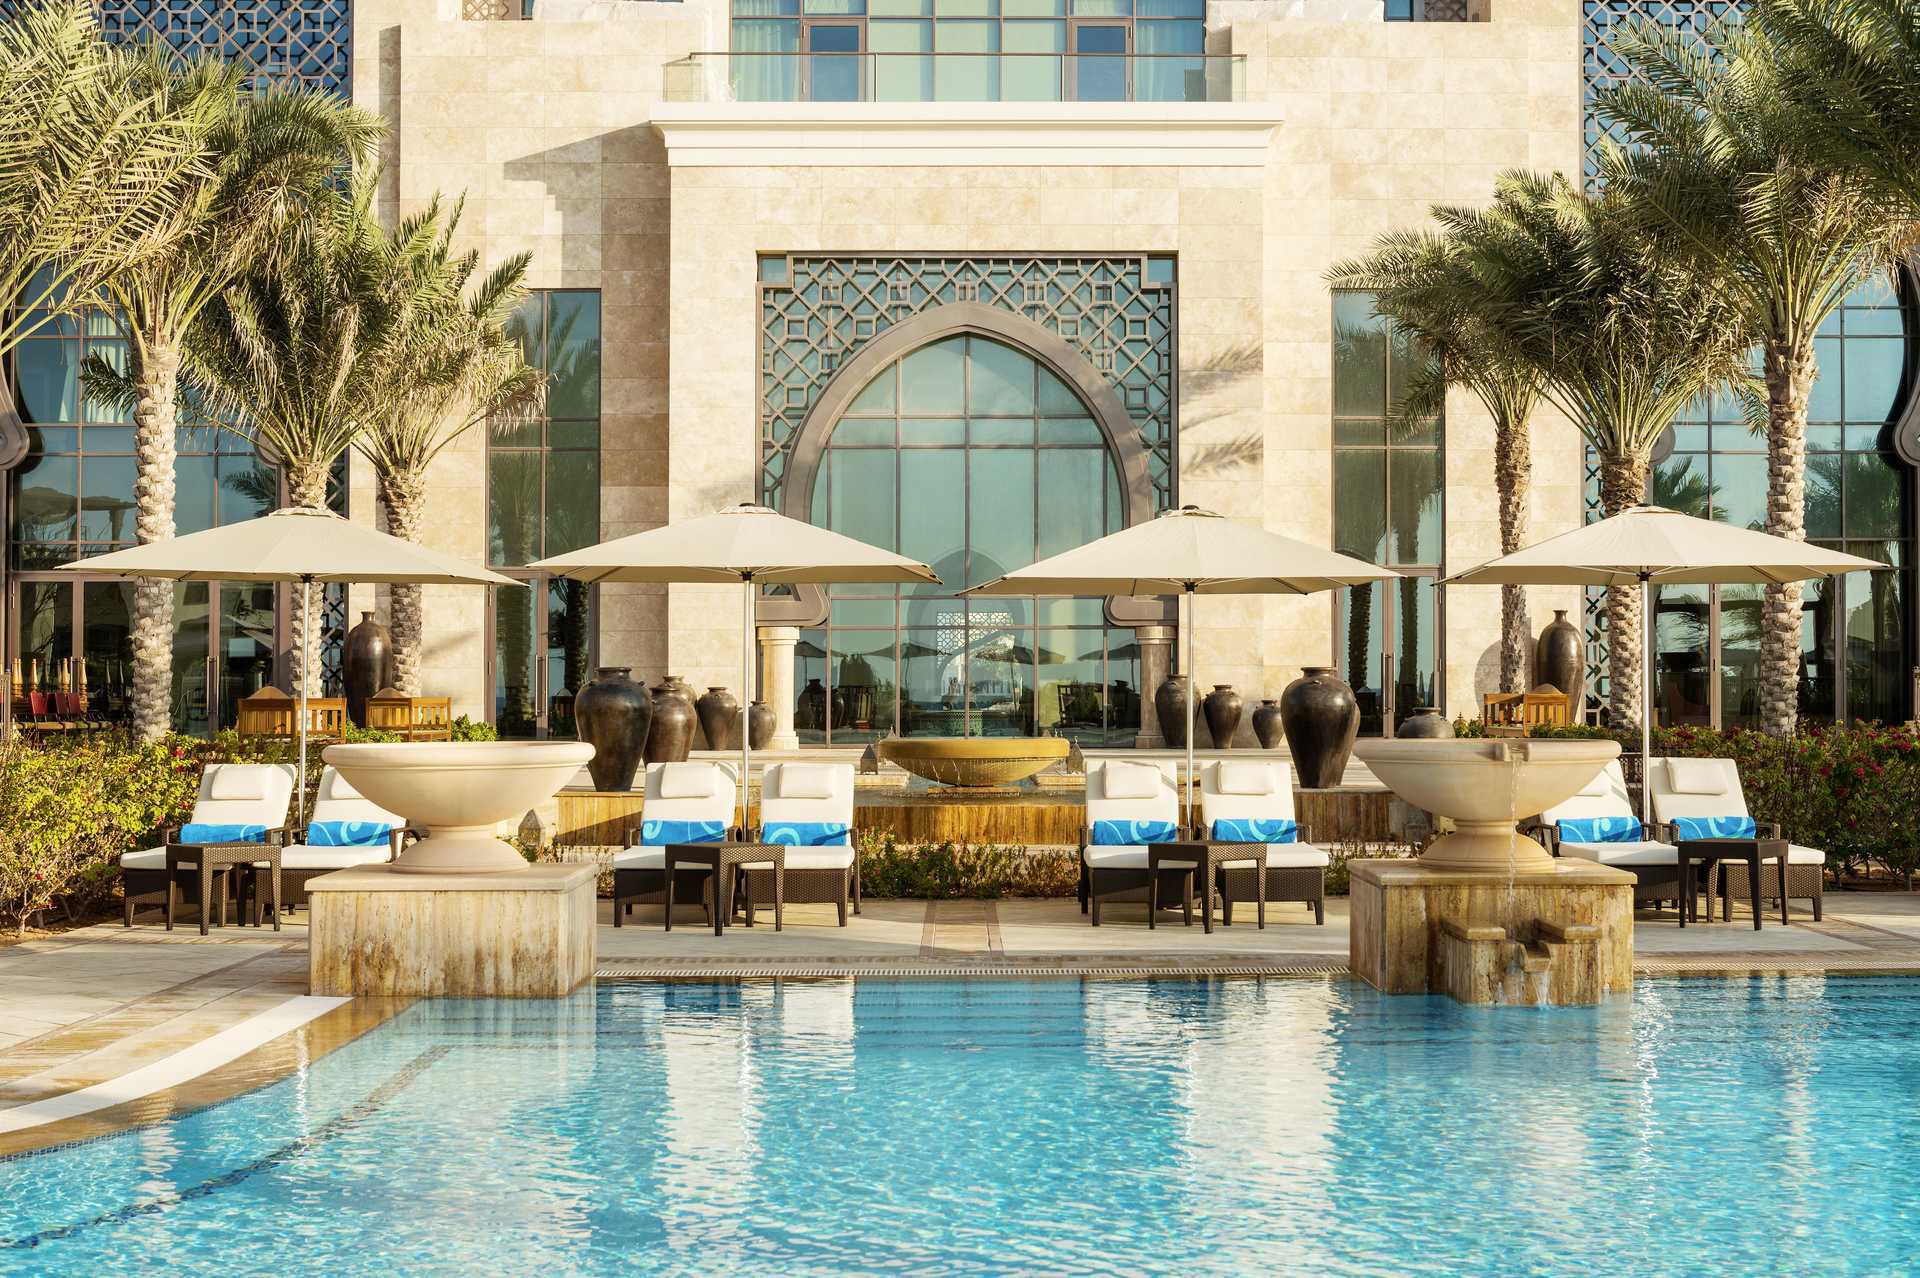 Hitta ditt hotell i Förenade Arabemiraten